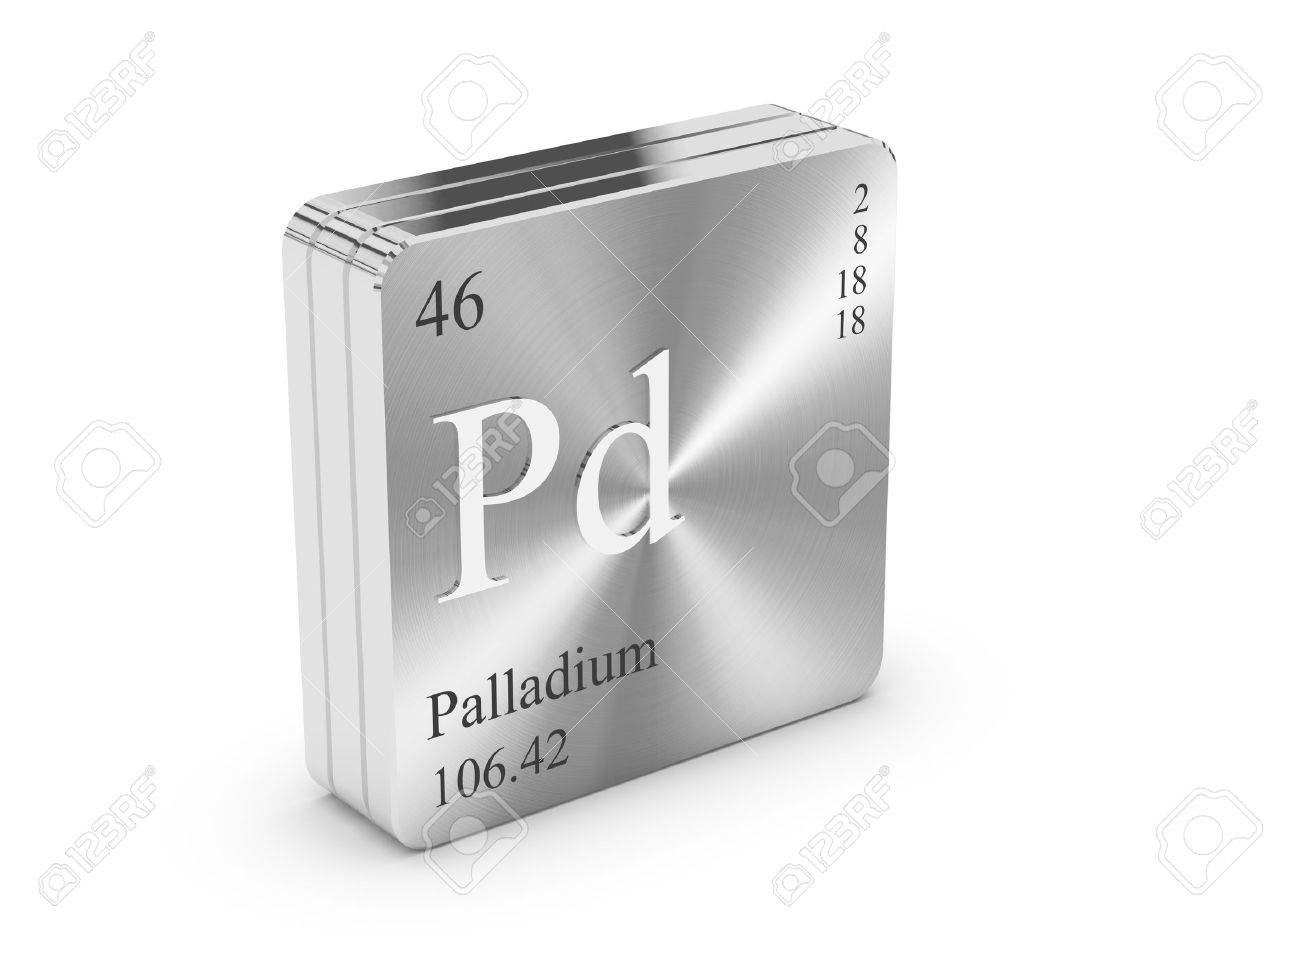 Paladium 999,5% - compte poids, peut pas être livré physiquement